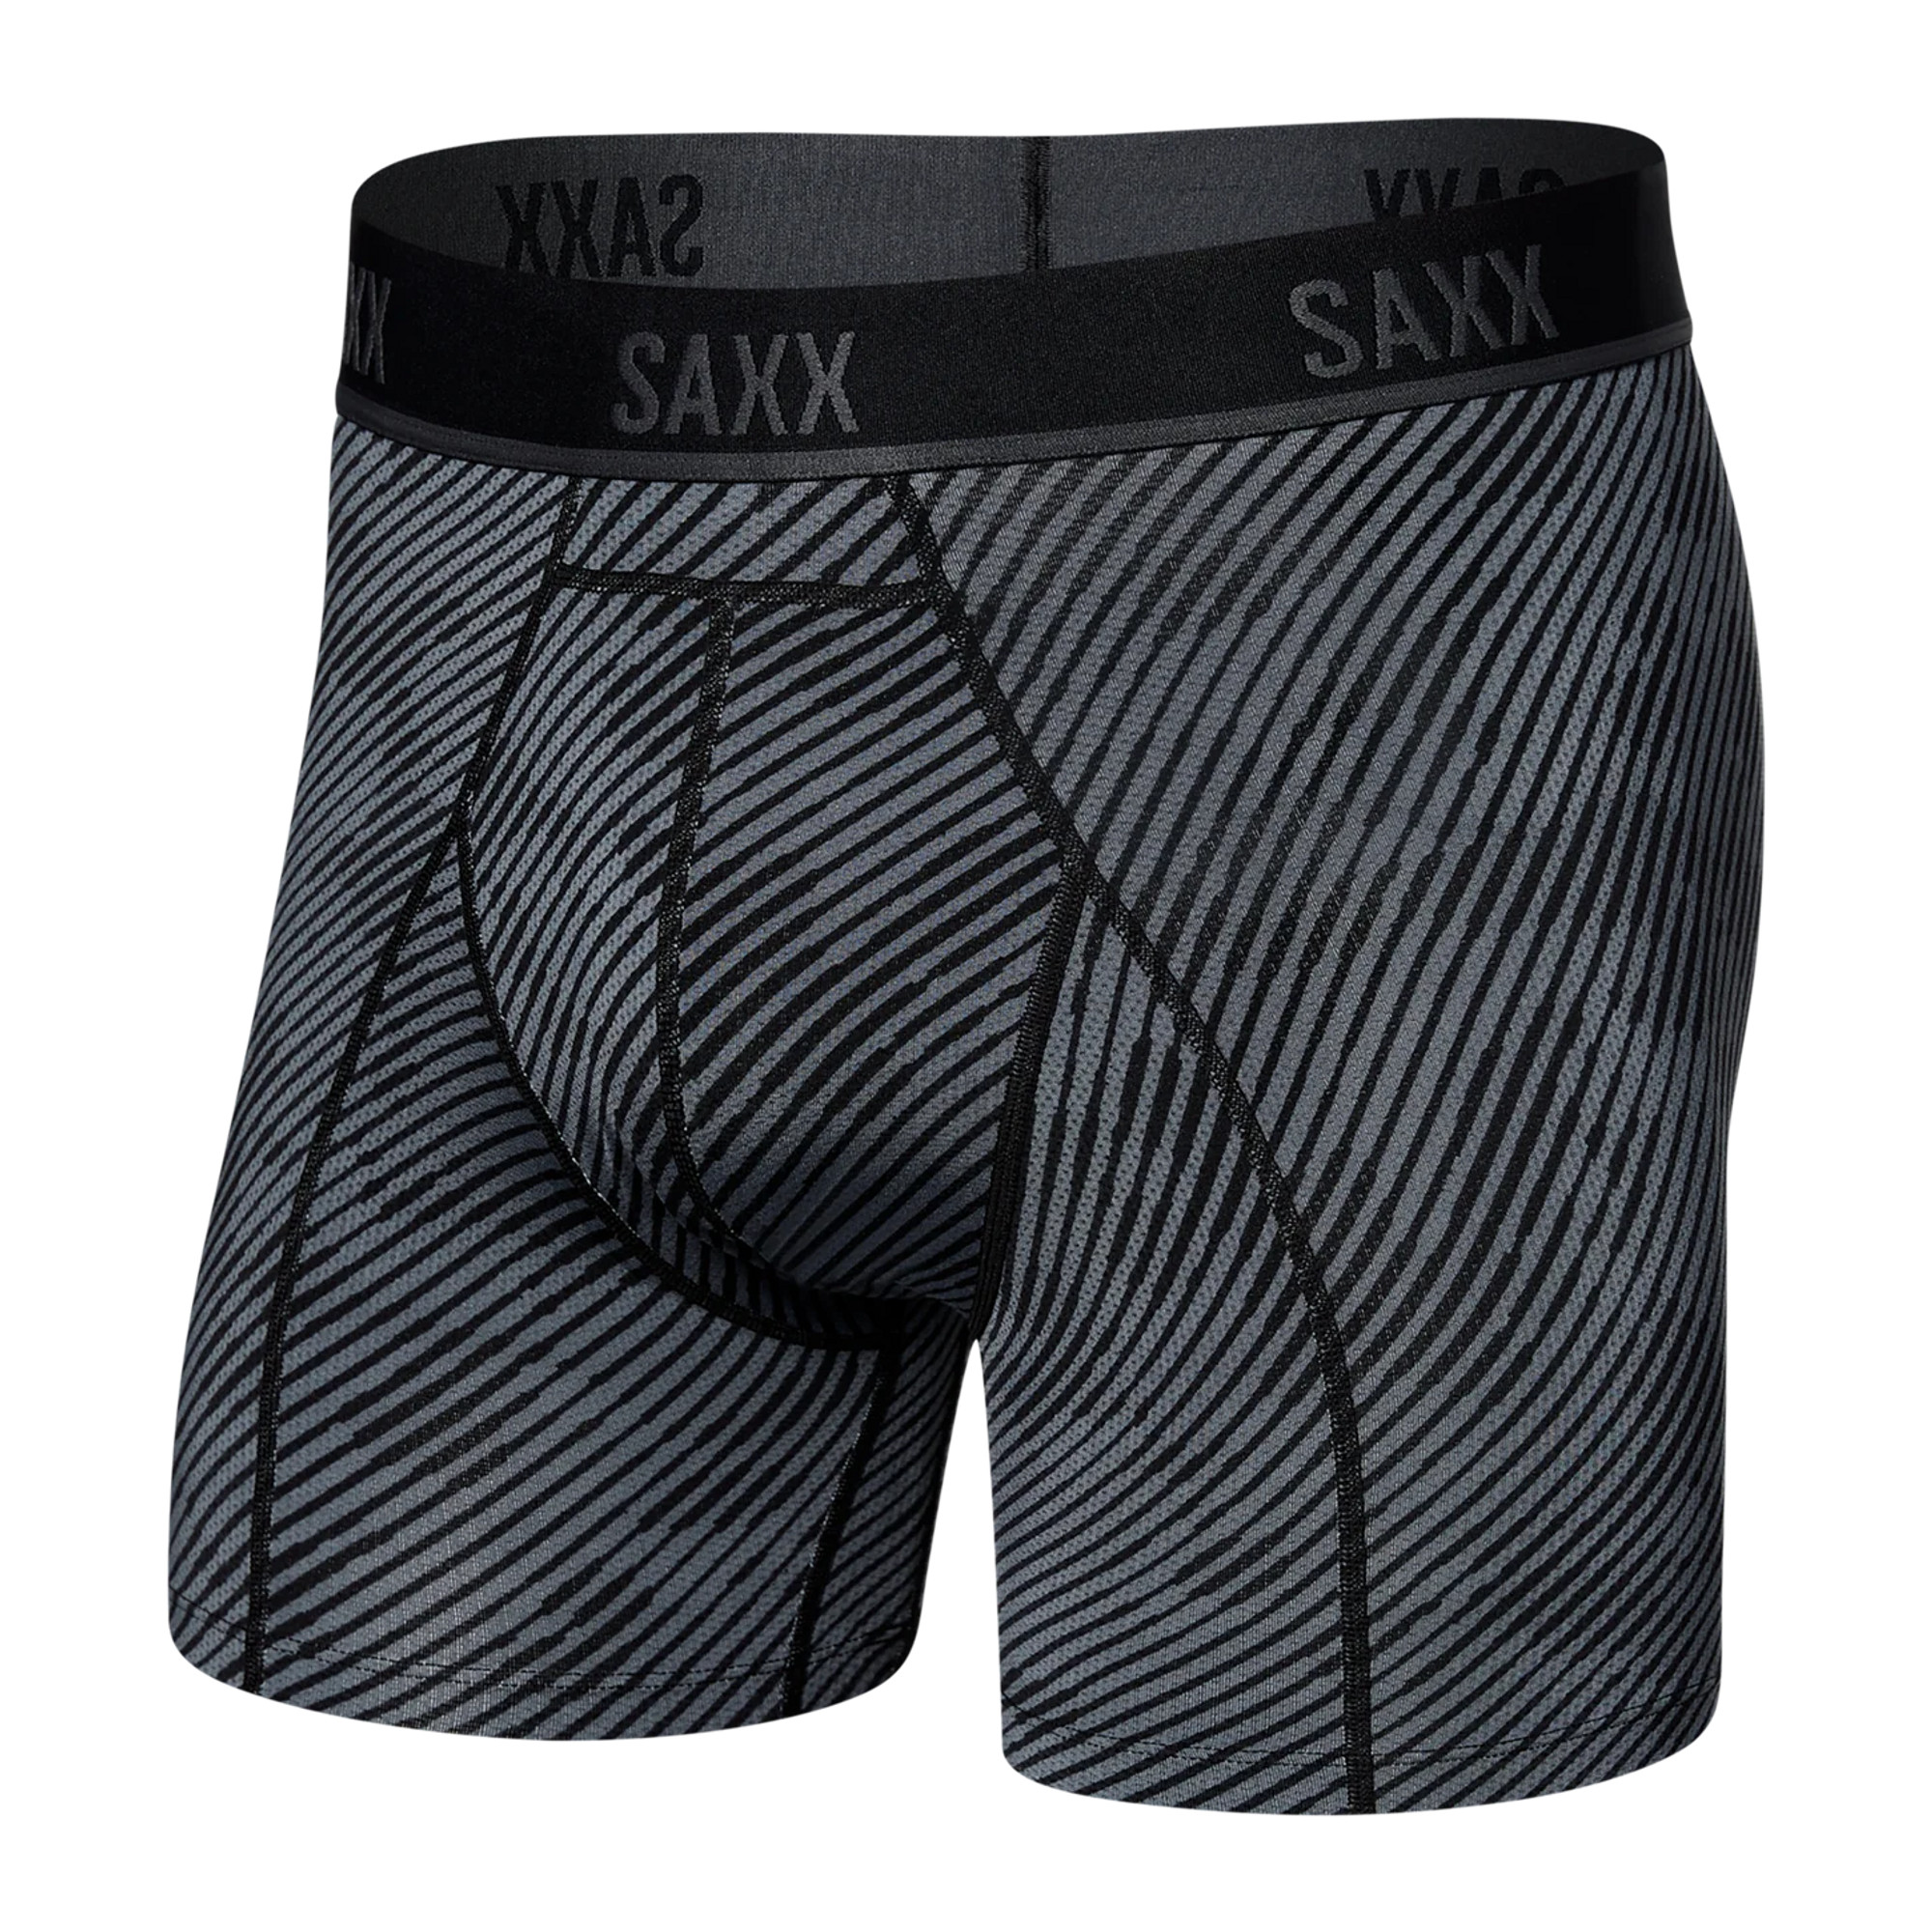 SAXX - Kinetic HD Boxer Brief - Optic Camo Black